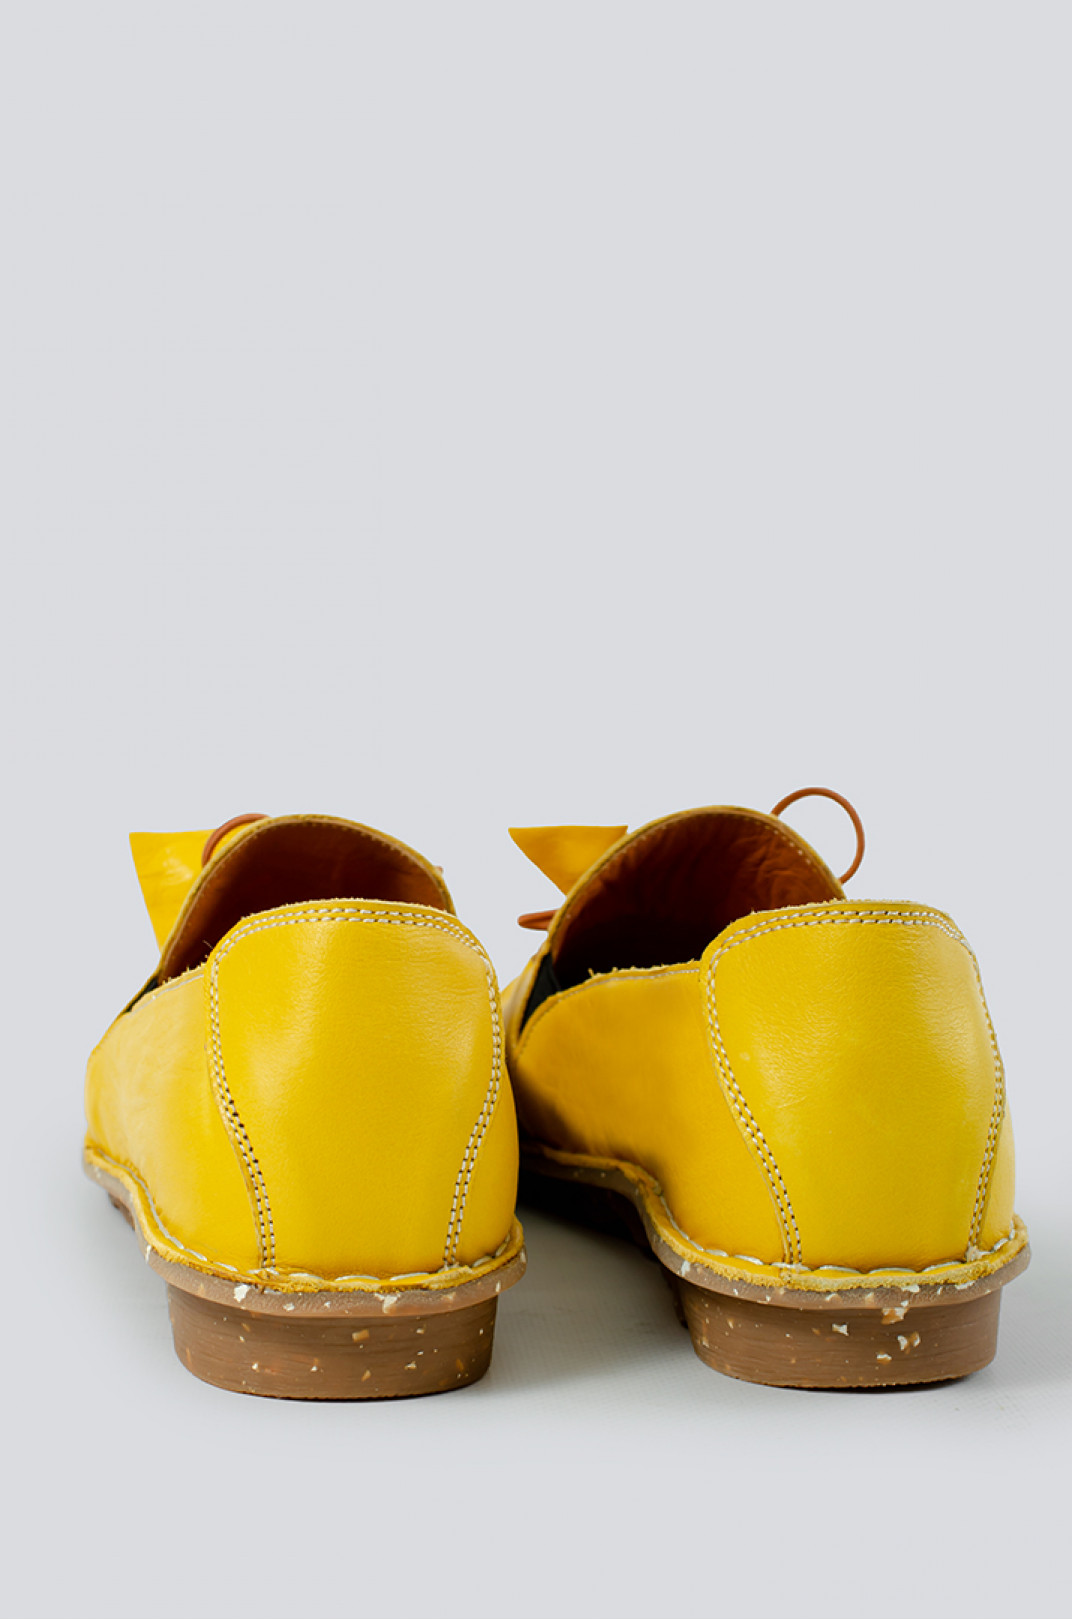 Жовті туфлі на широку ніжку великих розмірів